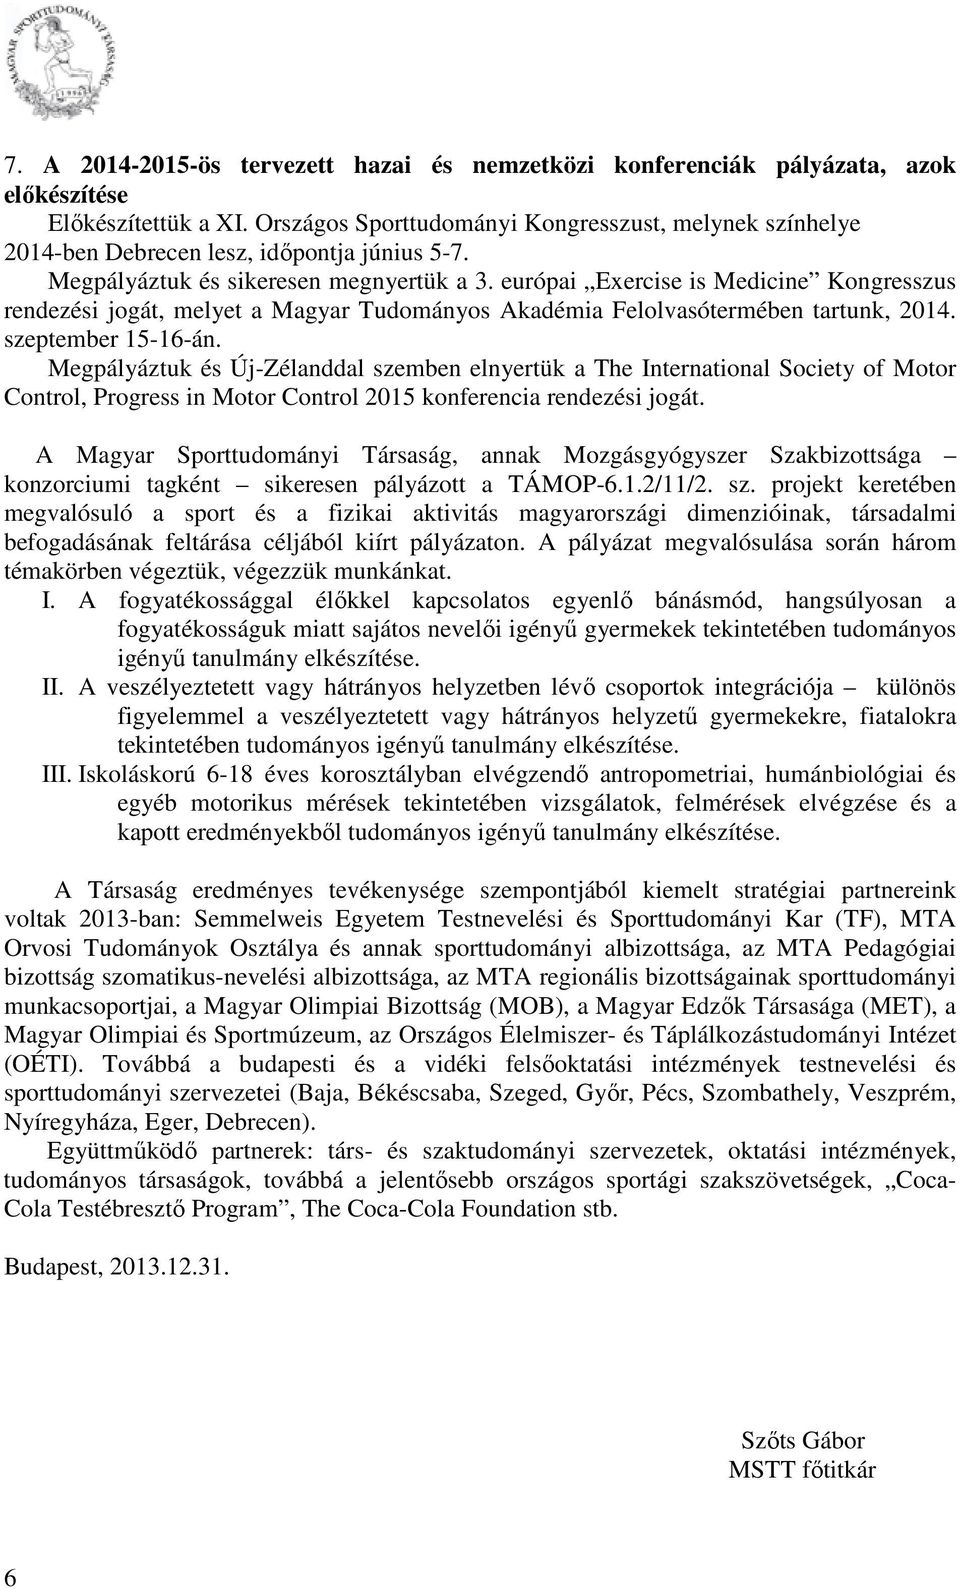 európai Exercise is Medicine Kongresszus rendezési jogát, melyet a Magyar Tudományos Akadémia Felolvasótermében tartunk, 2014. szeptember 15-16-án.